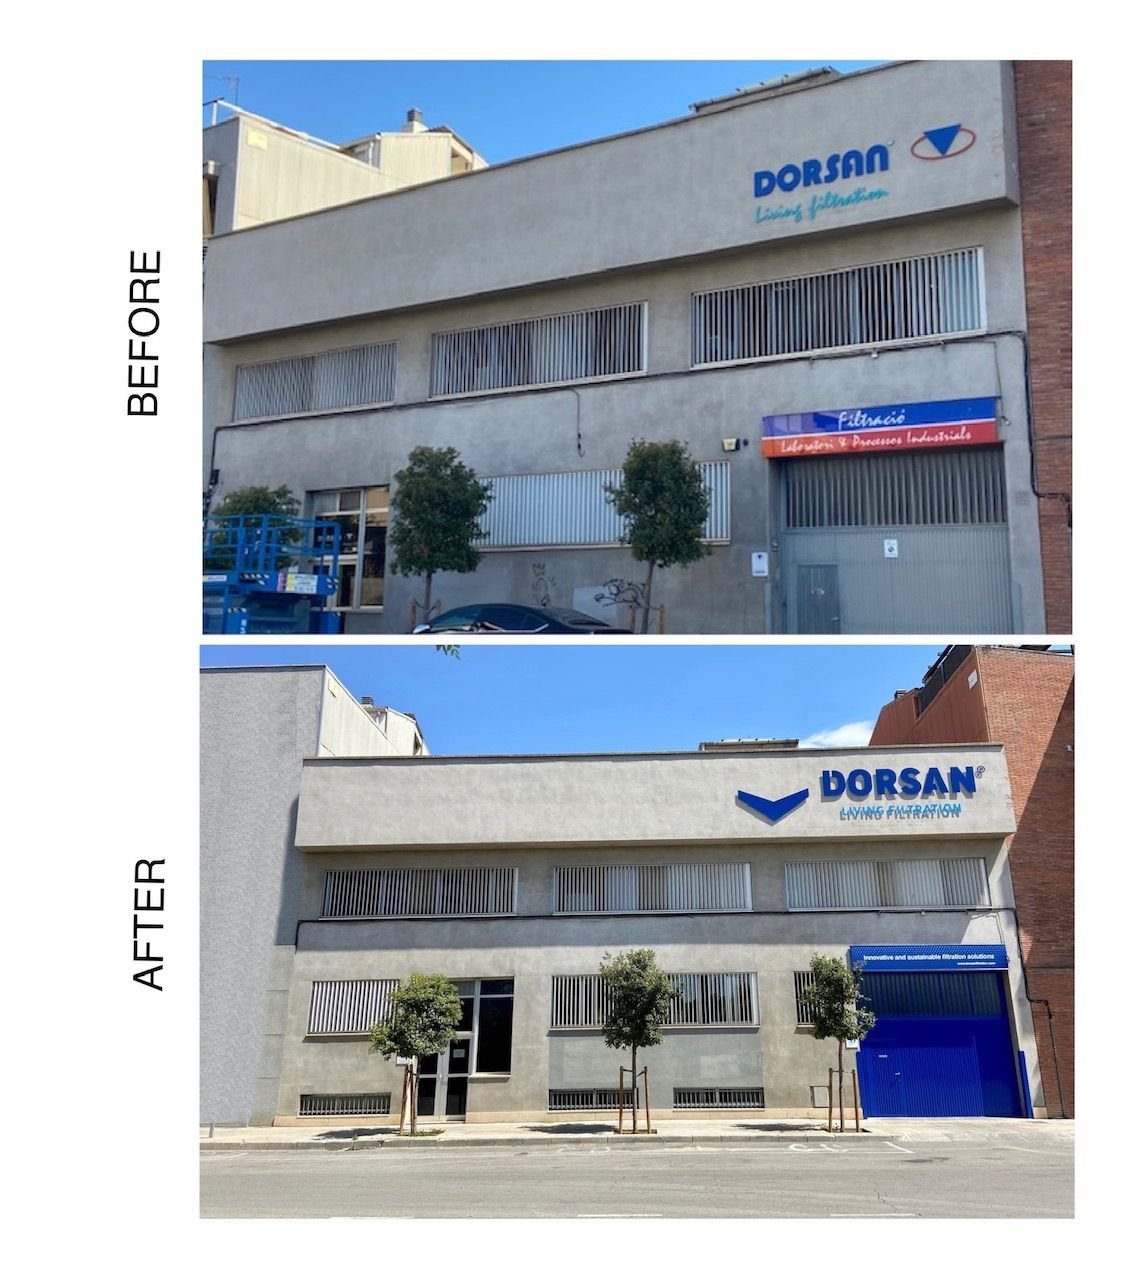 Neues Dorsan-Logo an der Fassade